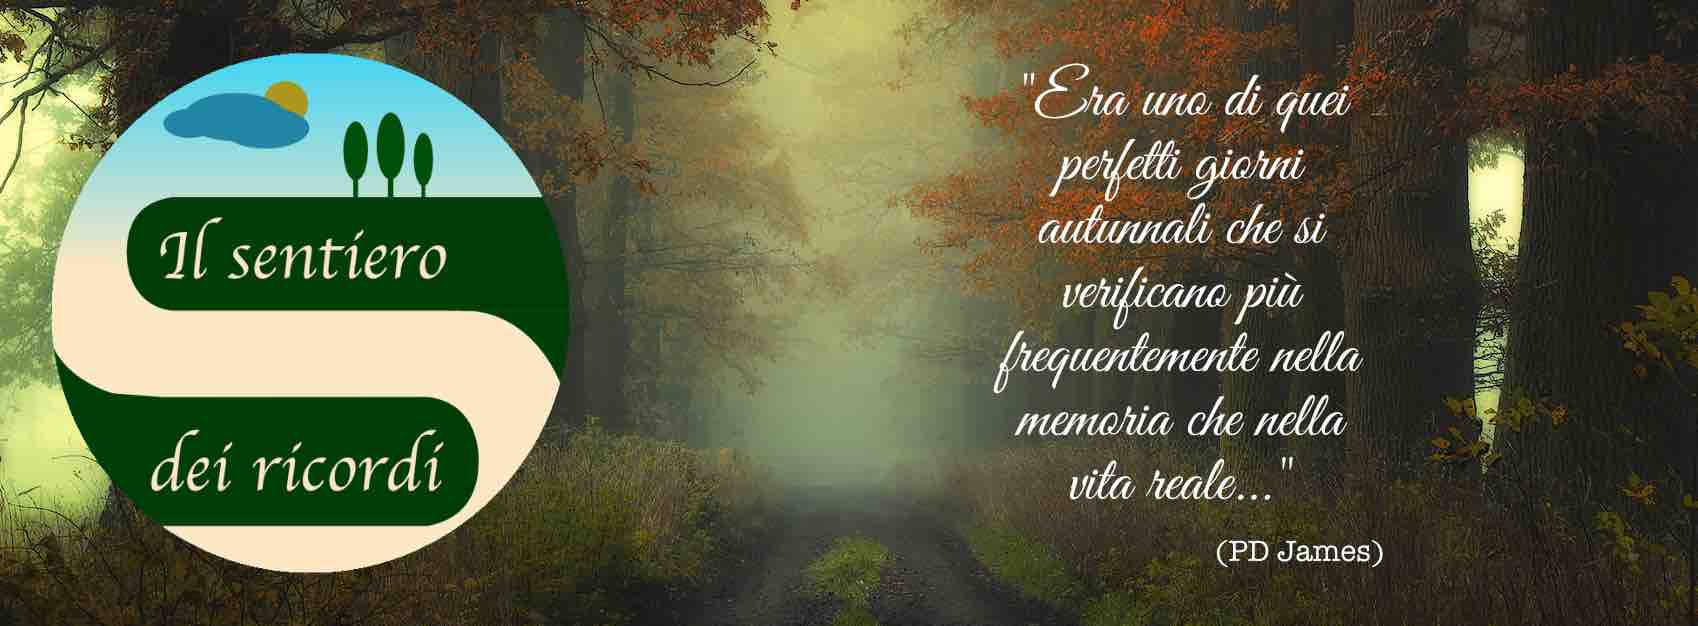 Onoranze Funebri Ricca Eugenia (Il Sentiero dei ricordi) sfondo della pagina Facebook.